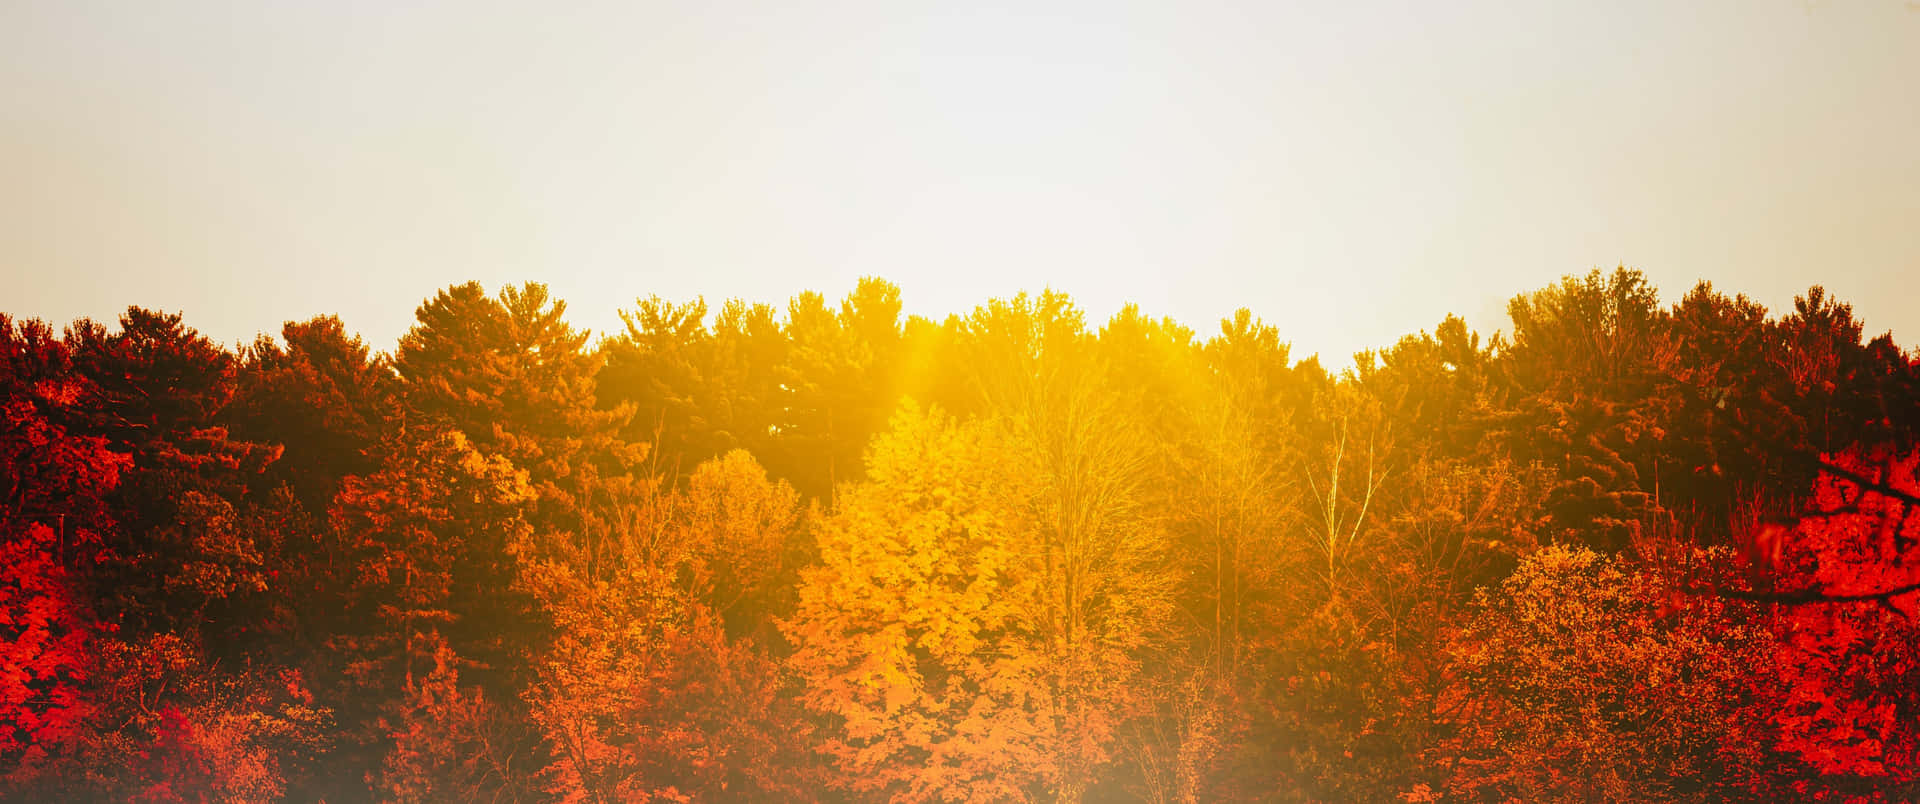 Fall Tumblr Sunlight Over Trees Wallpaper